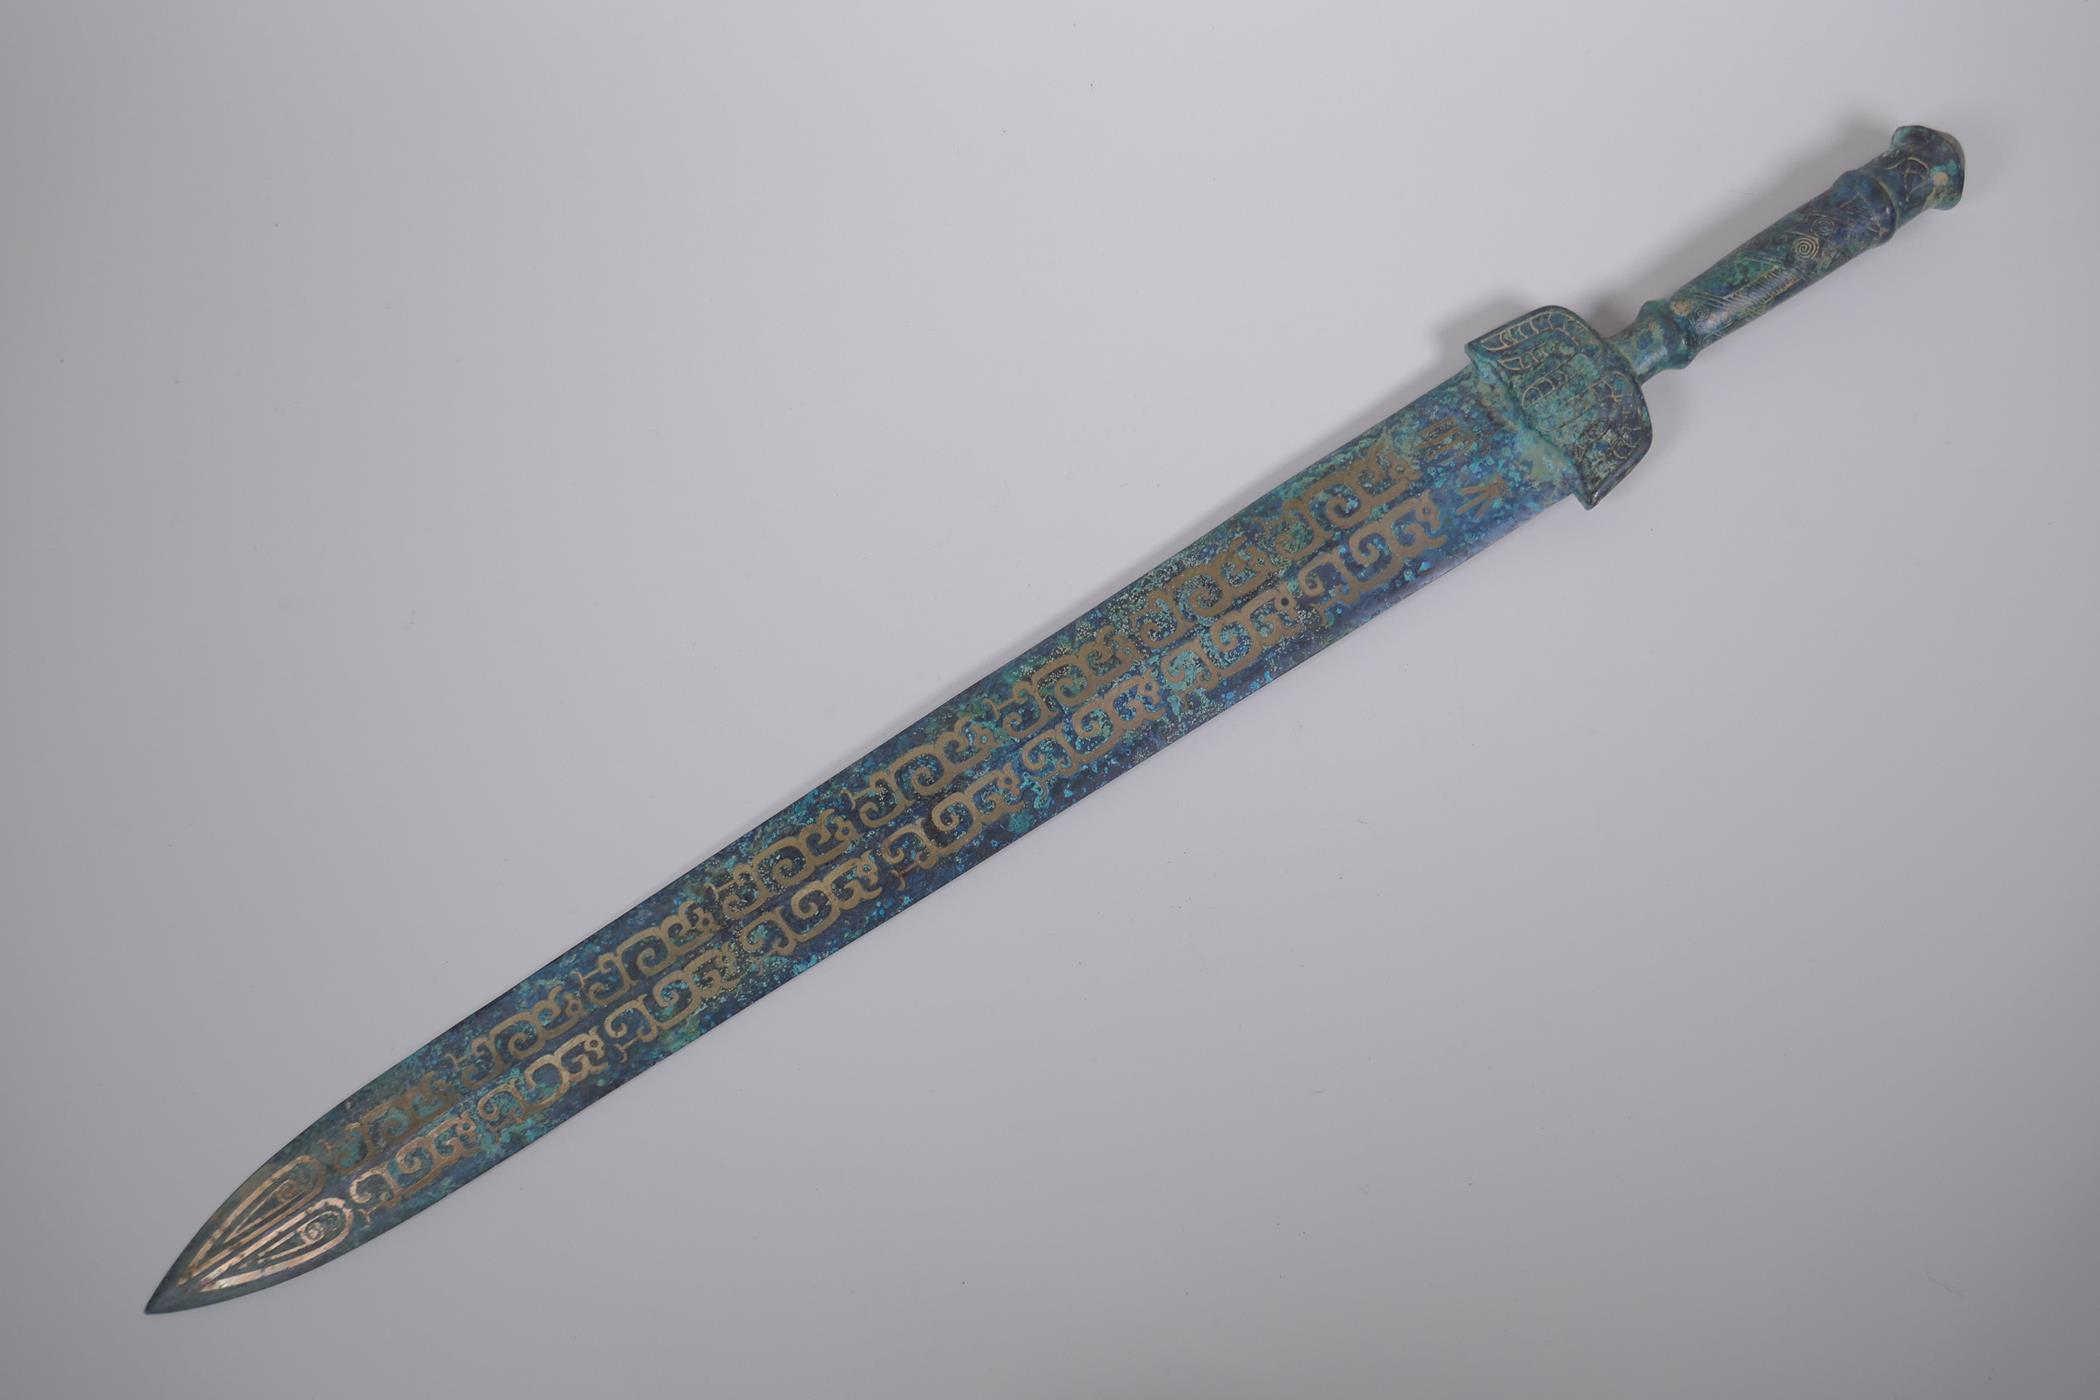 A bronze Archaic style short sword, 62cm long